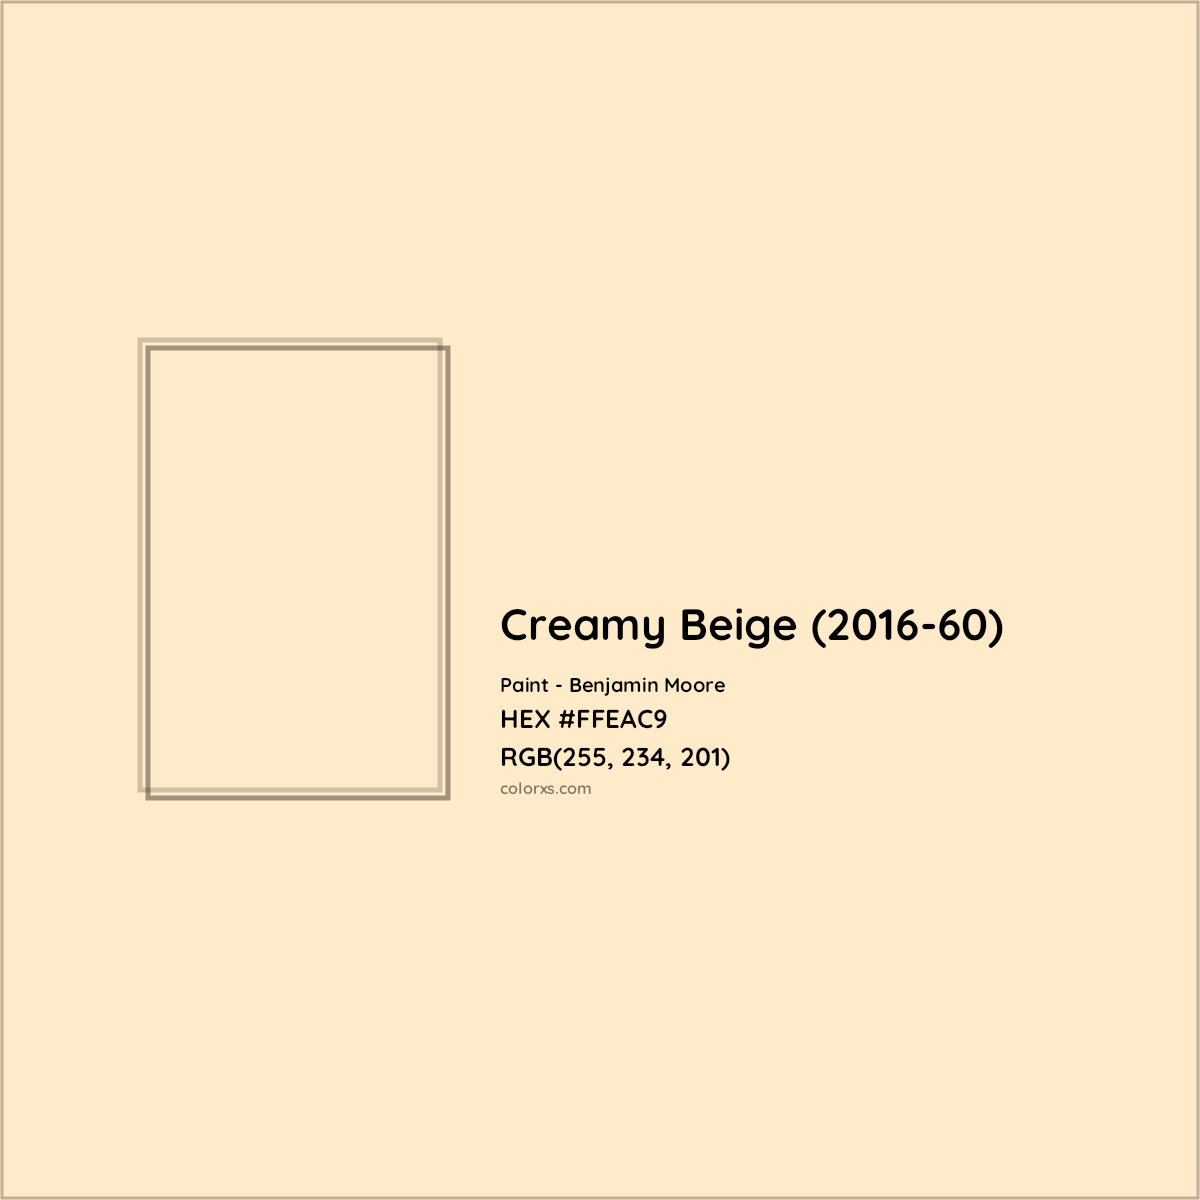 Benjamin Moore's 2016-60 Creamy Beige